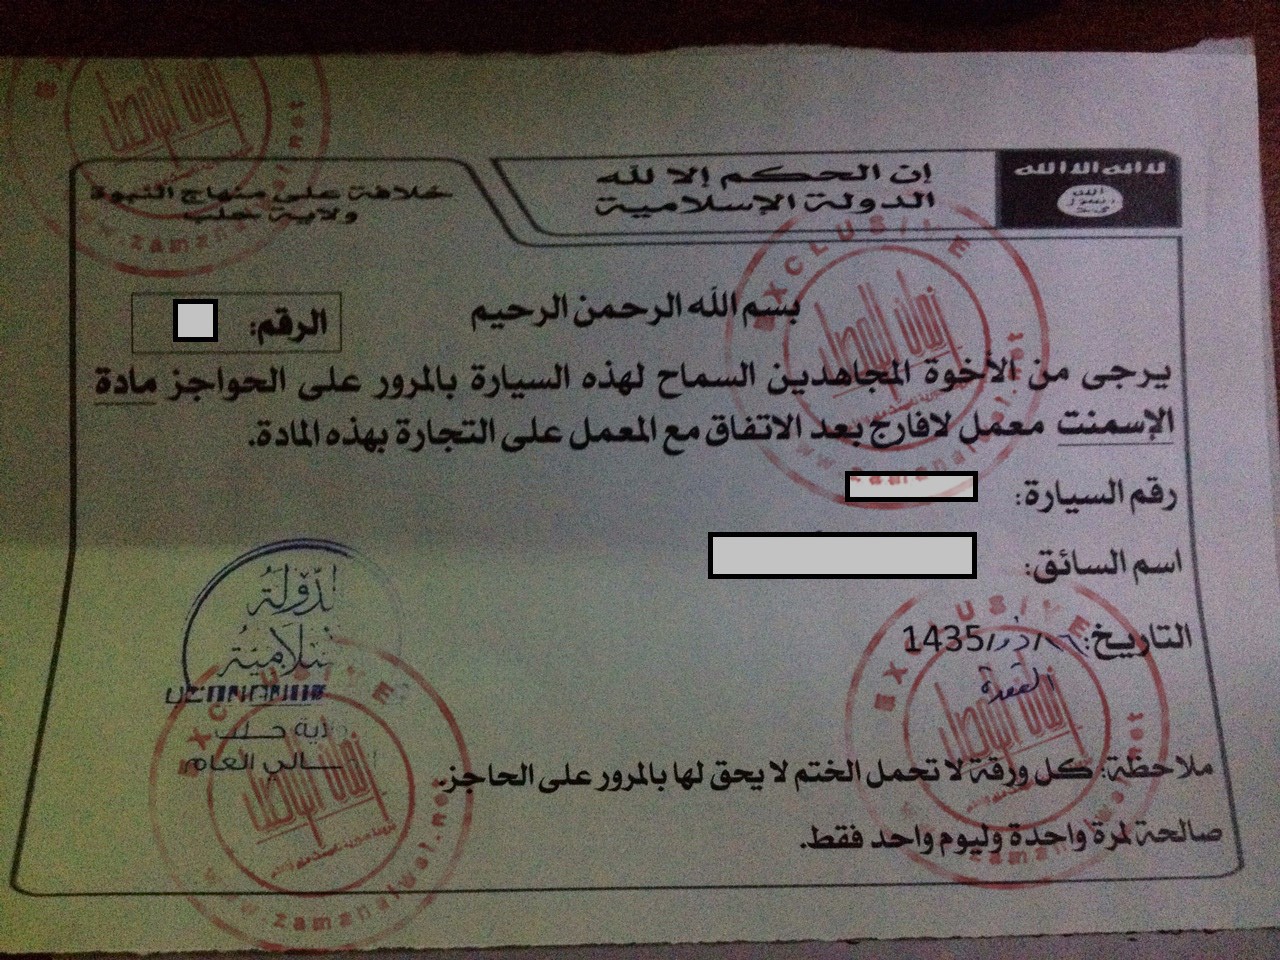 Documenti - Il governo francese ha collaborato con l'ISIS attraverso l'azienda francese Lafarge 2